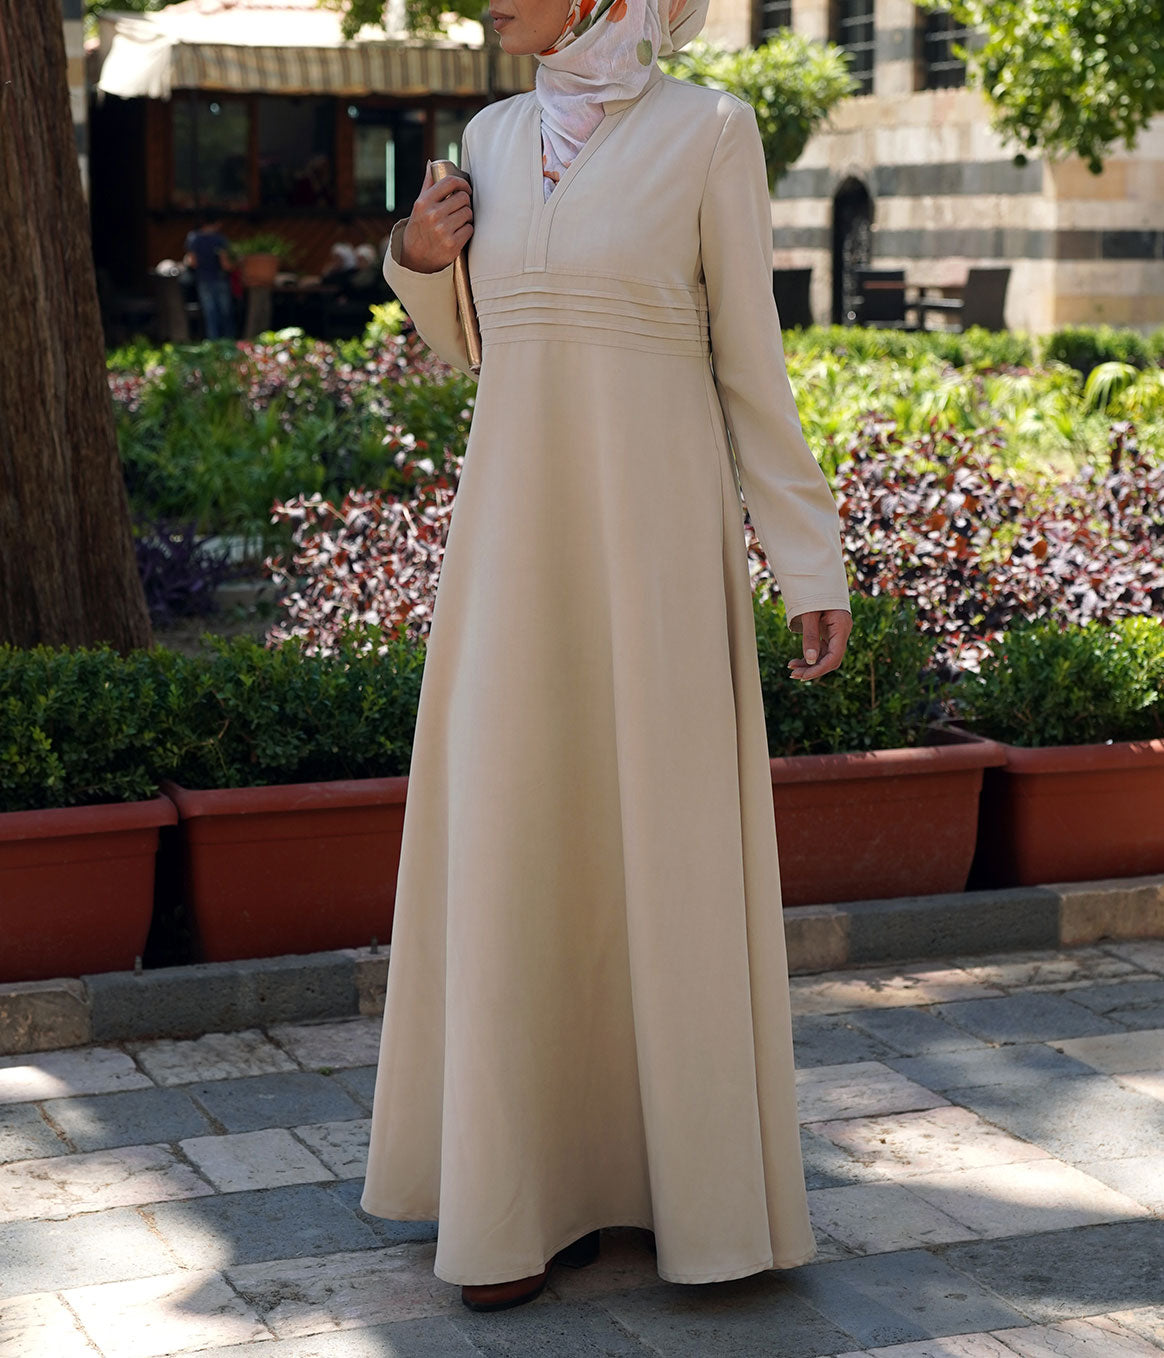 Black Fursan Abaya with Golden buttons sleeves Details | Mode femme  musulmane, Mode femme, Femme musulmane